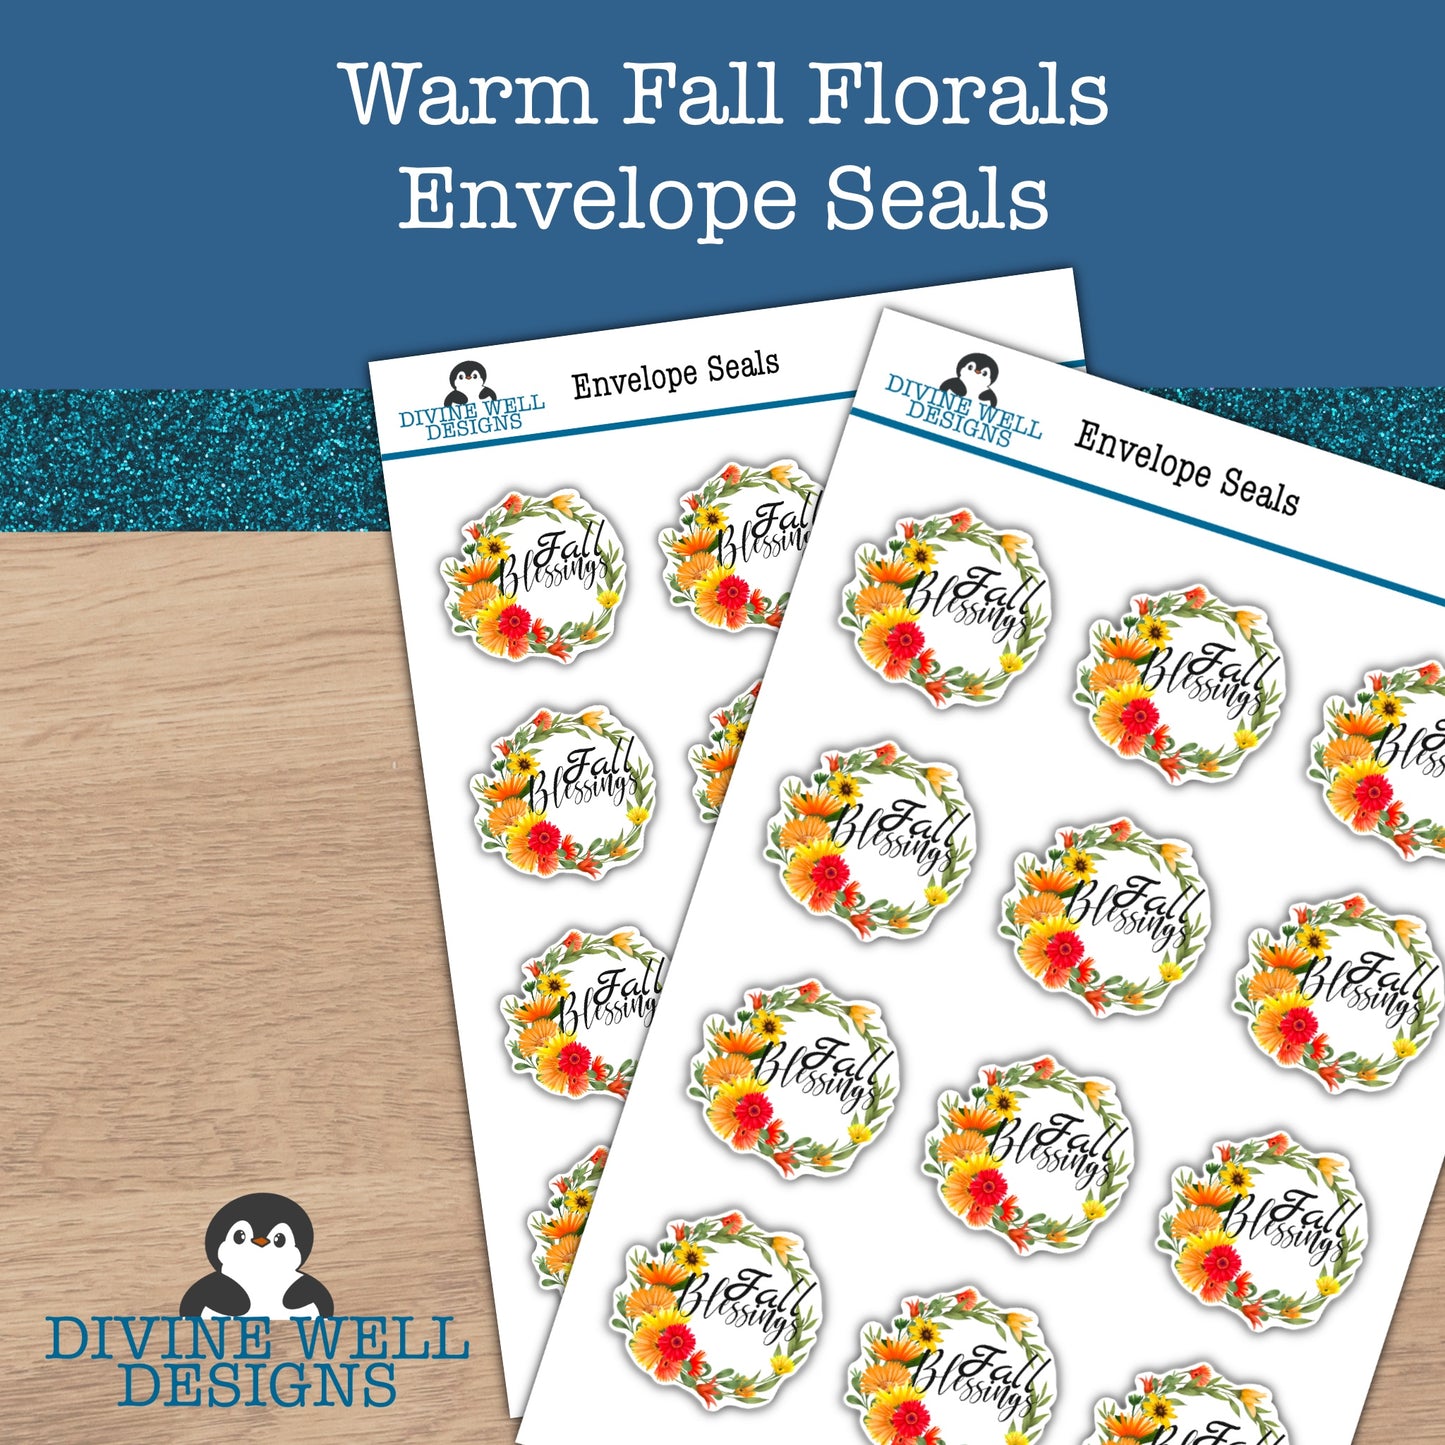 0151 - Warm Fall Florals - Envelope Seals